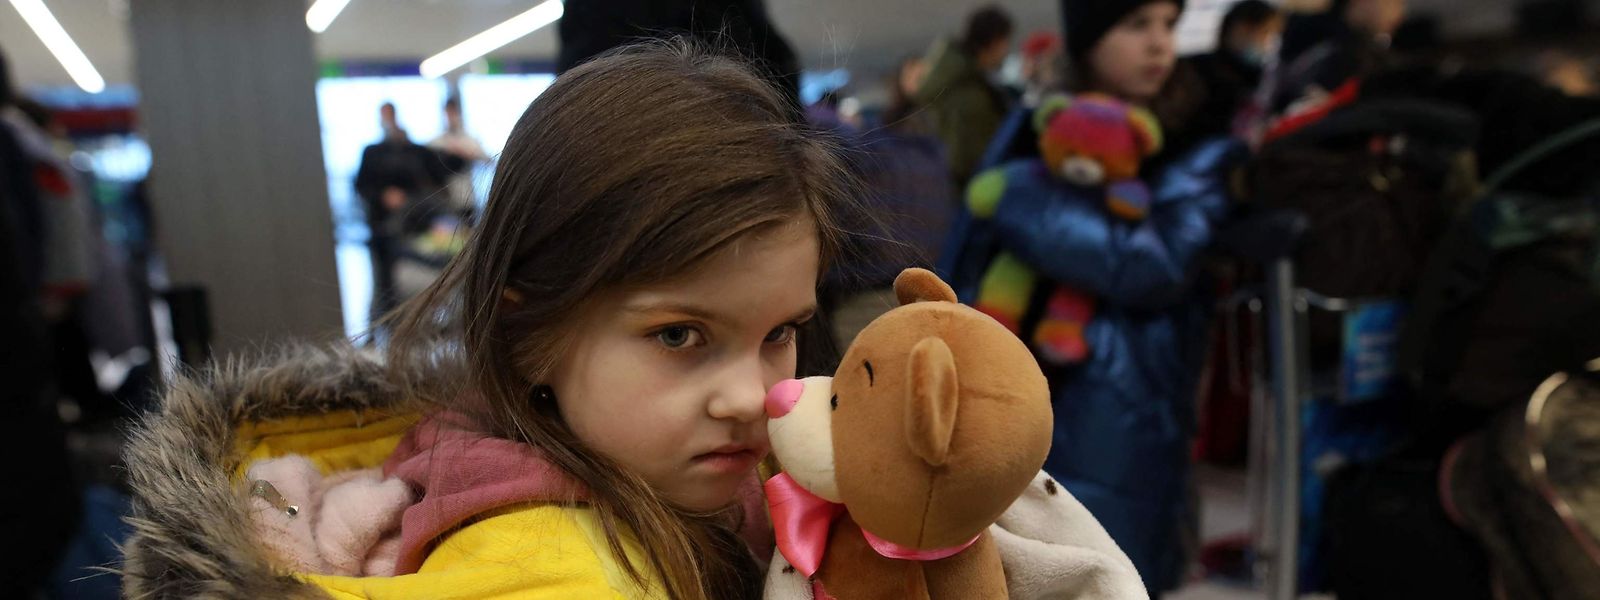 Cerca de 90% dos que fugiram da Ucrânia são mulheres e crianças, segundo a ACNUR